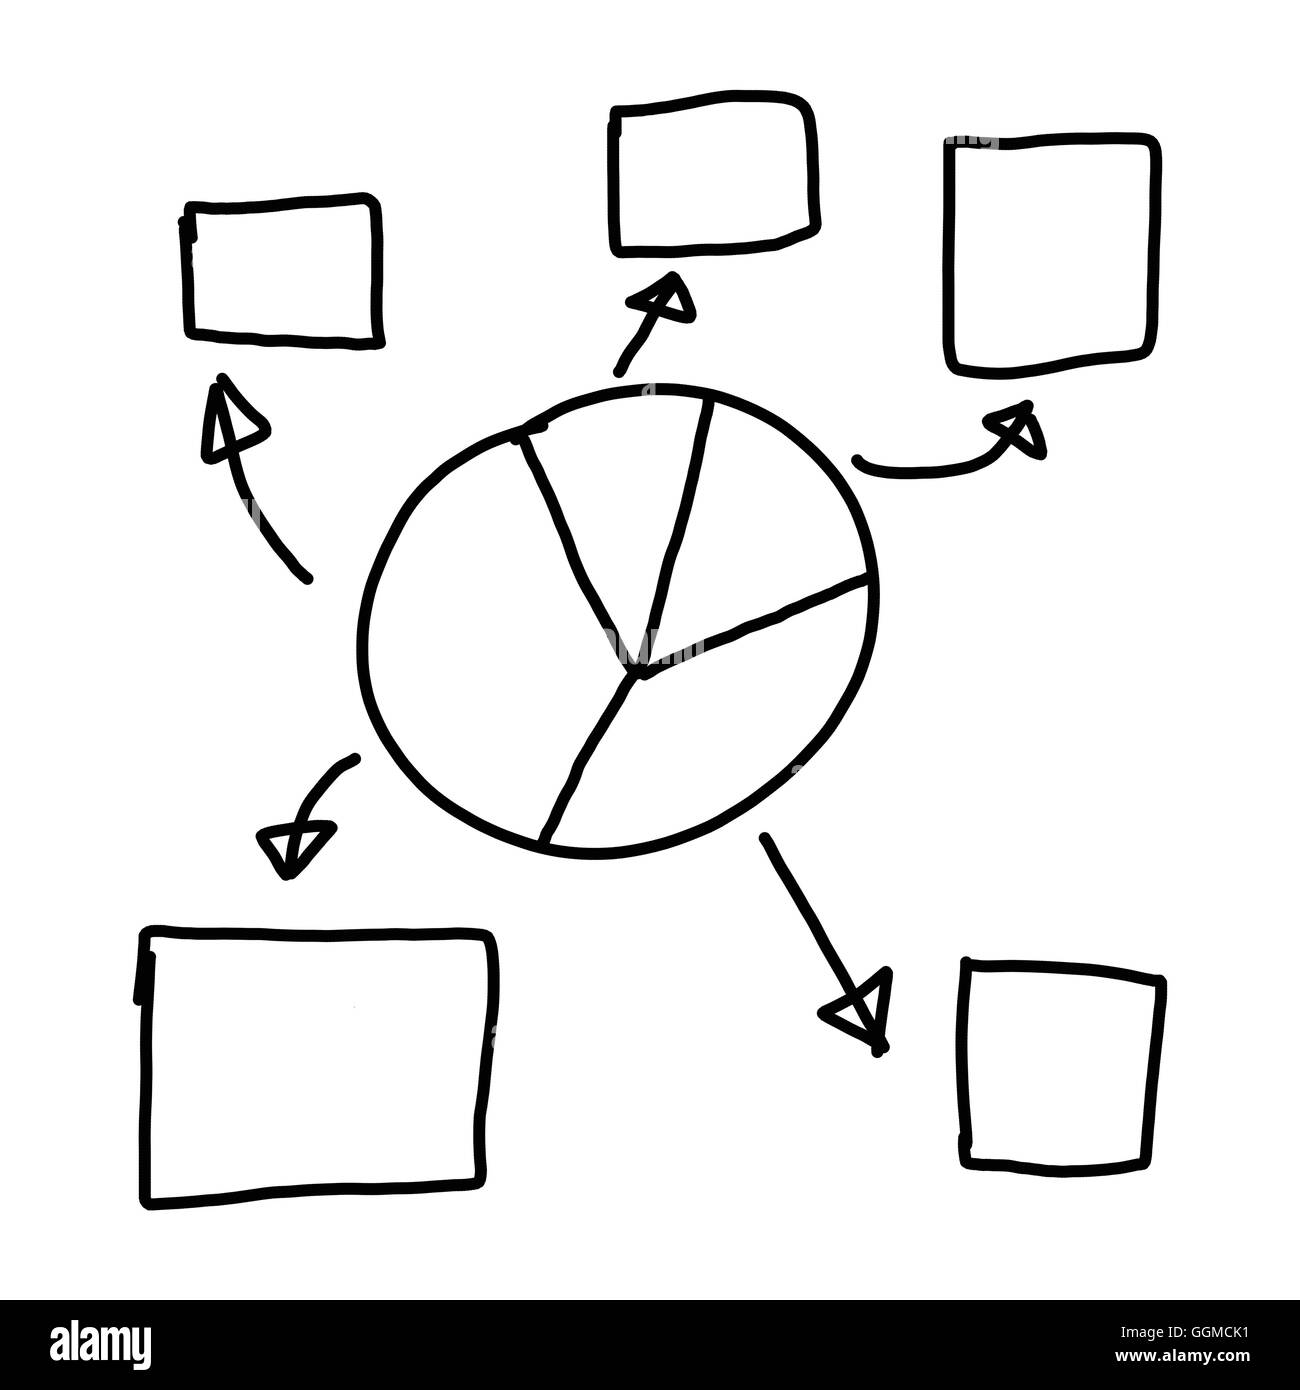 Disegnata a mano a simboli grafici delle forme geometriche grafico per le informazioni di input concetto di profitto in azienda o in Gestione di sistema su Foto Stock